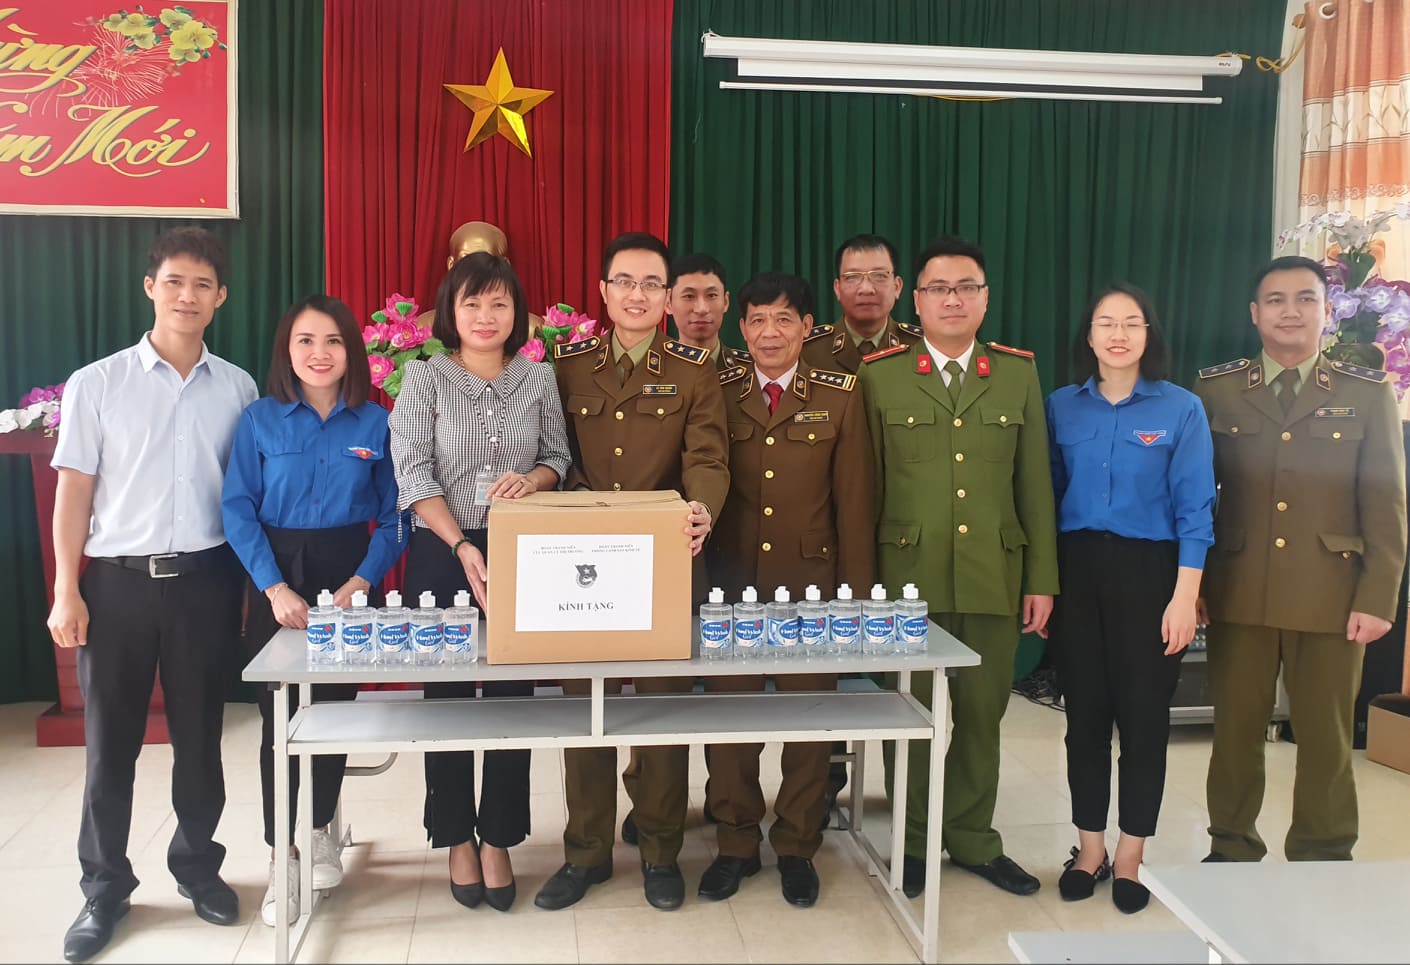 Đoàn TN hai cơ quan trao tặng dung dịch rửa tay khô cho Trường Phổ thông dân tộc bán trú TH&THCS Đồng Lâm 1.